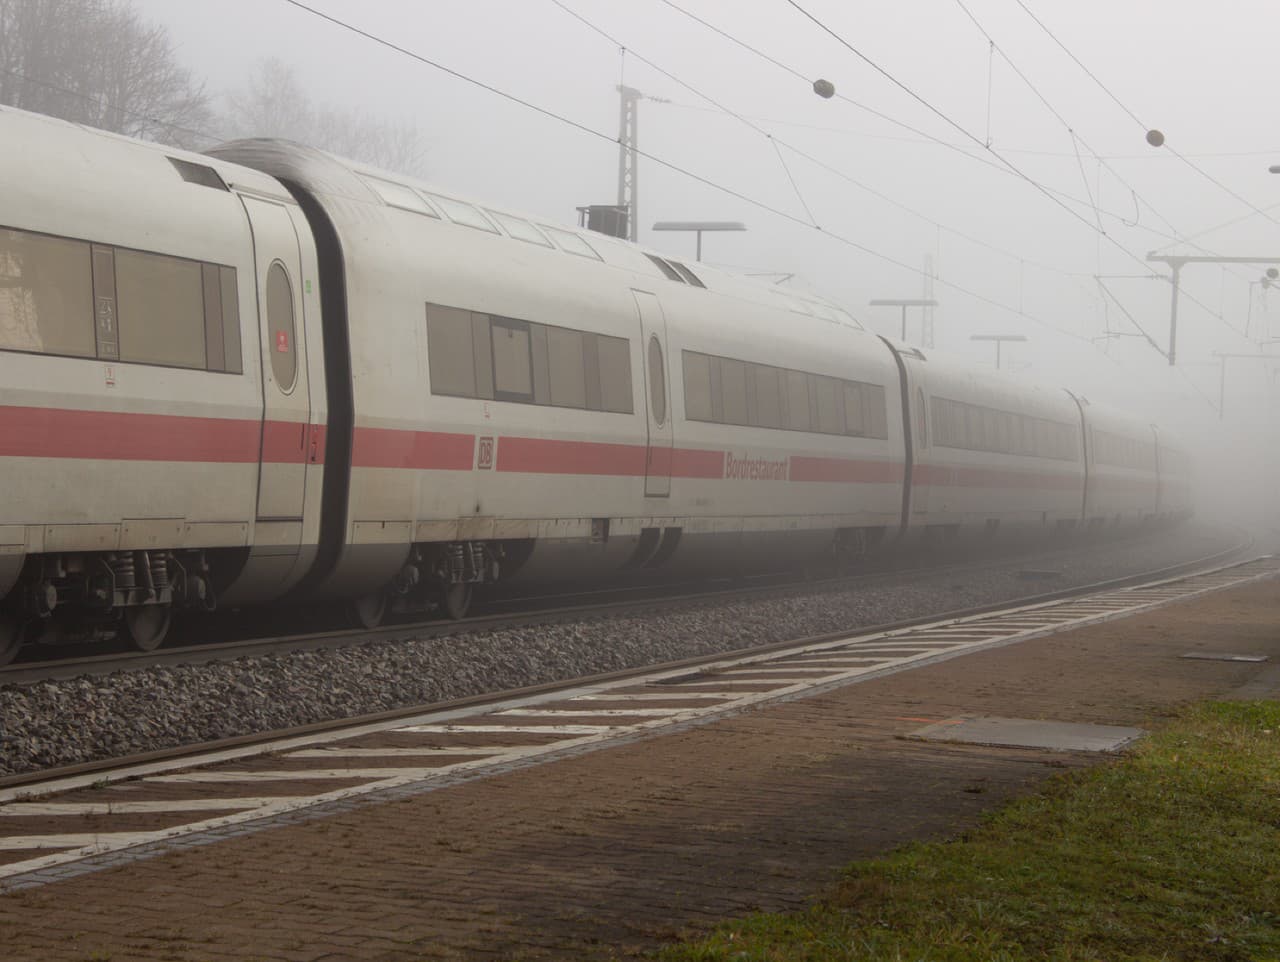 Vlak po útoku zastavil v obci Seubersdorf, kde príslušníci bezpečnostných zložiek podozrivého rýchlo zadržali.